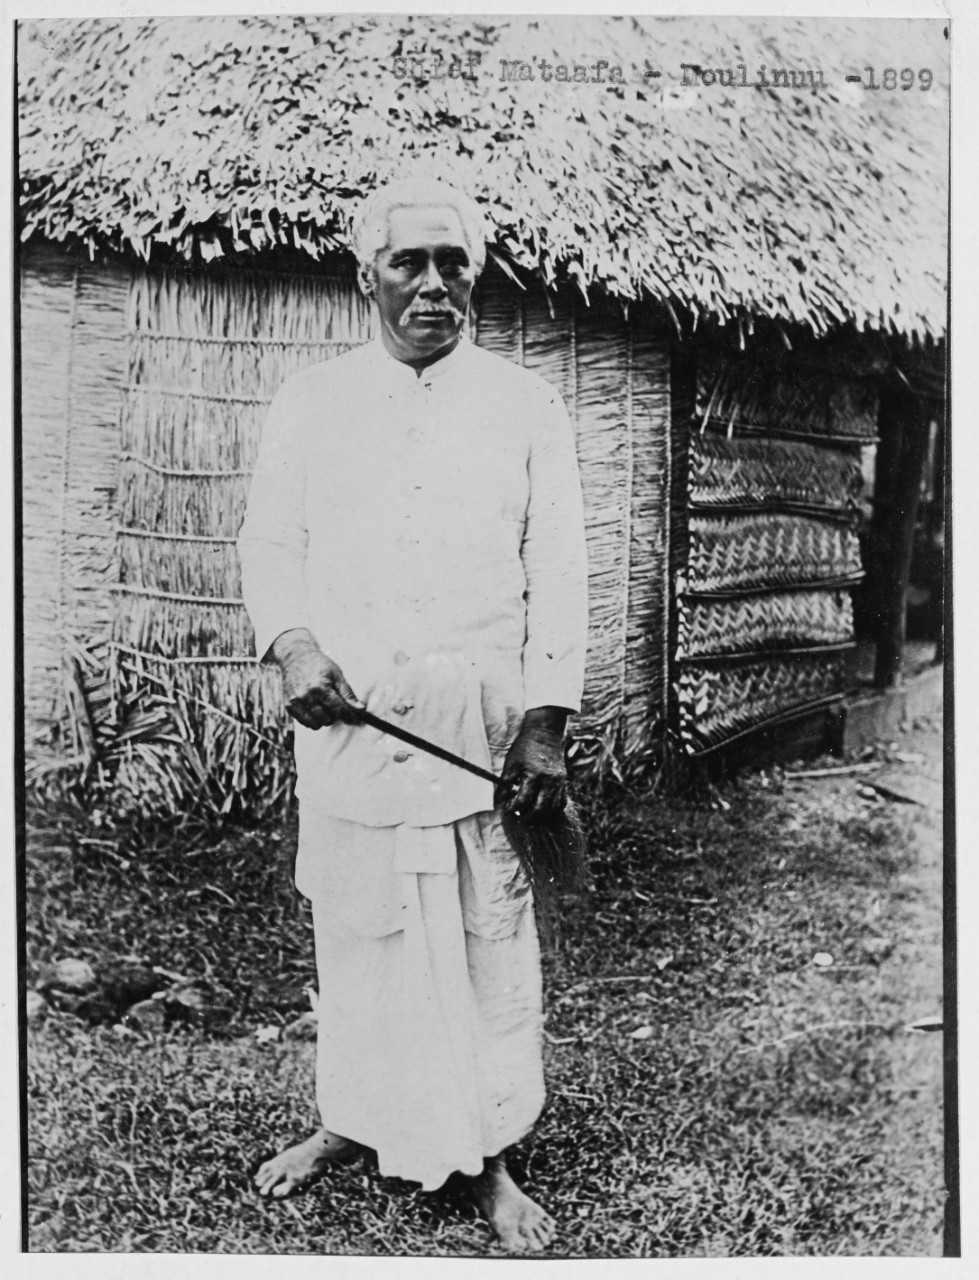 Chief Mataafa, Moulinuu, Samoa, 1899.